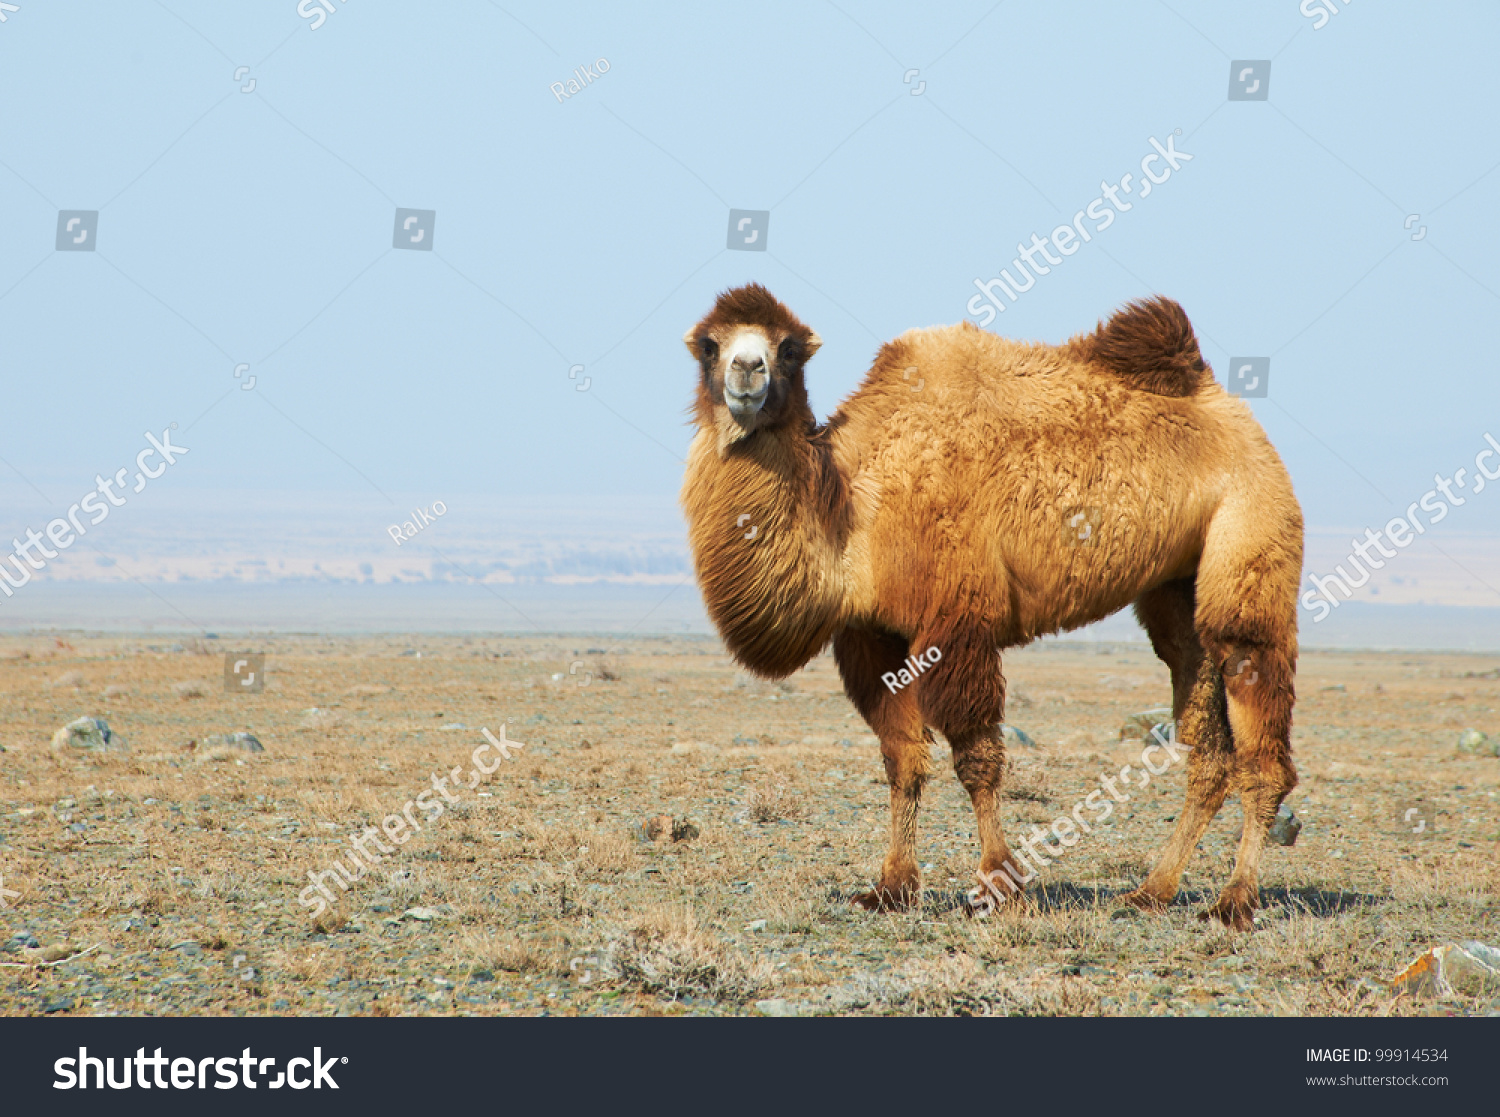 Camel In The Desert Kazakhstan Stock Photo 99914534 : Shutterstock